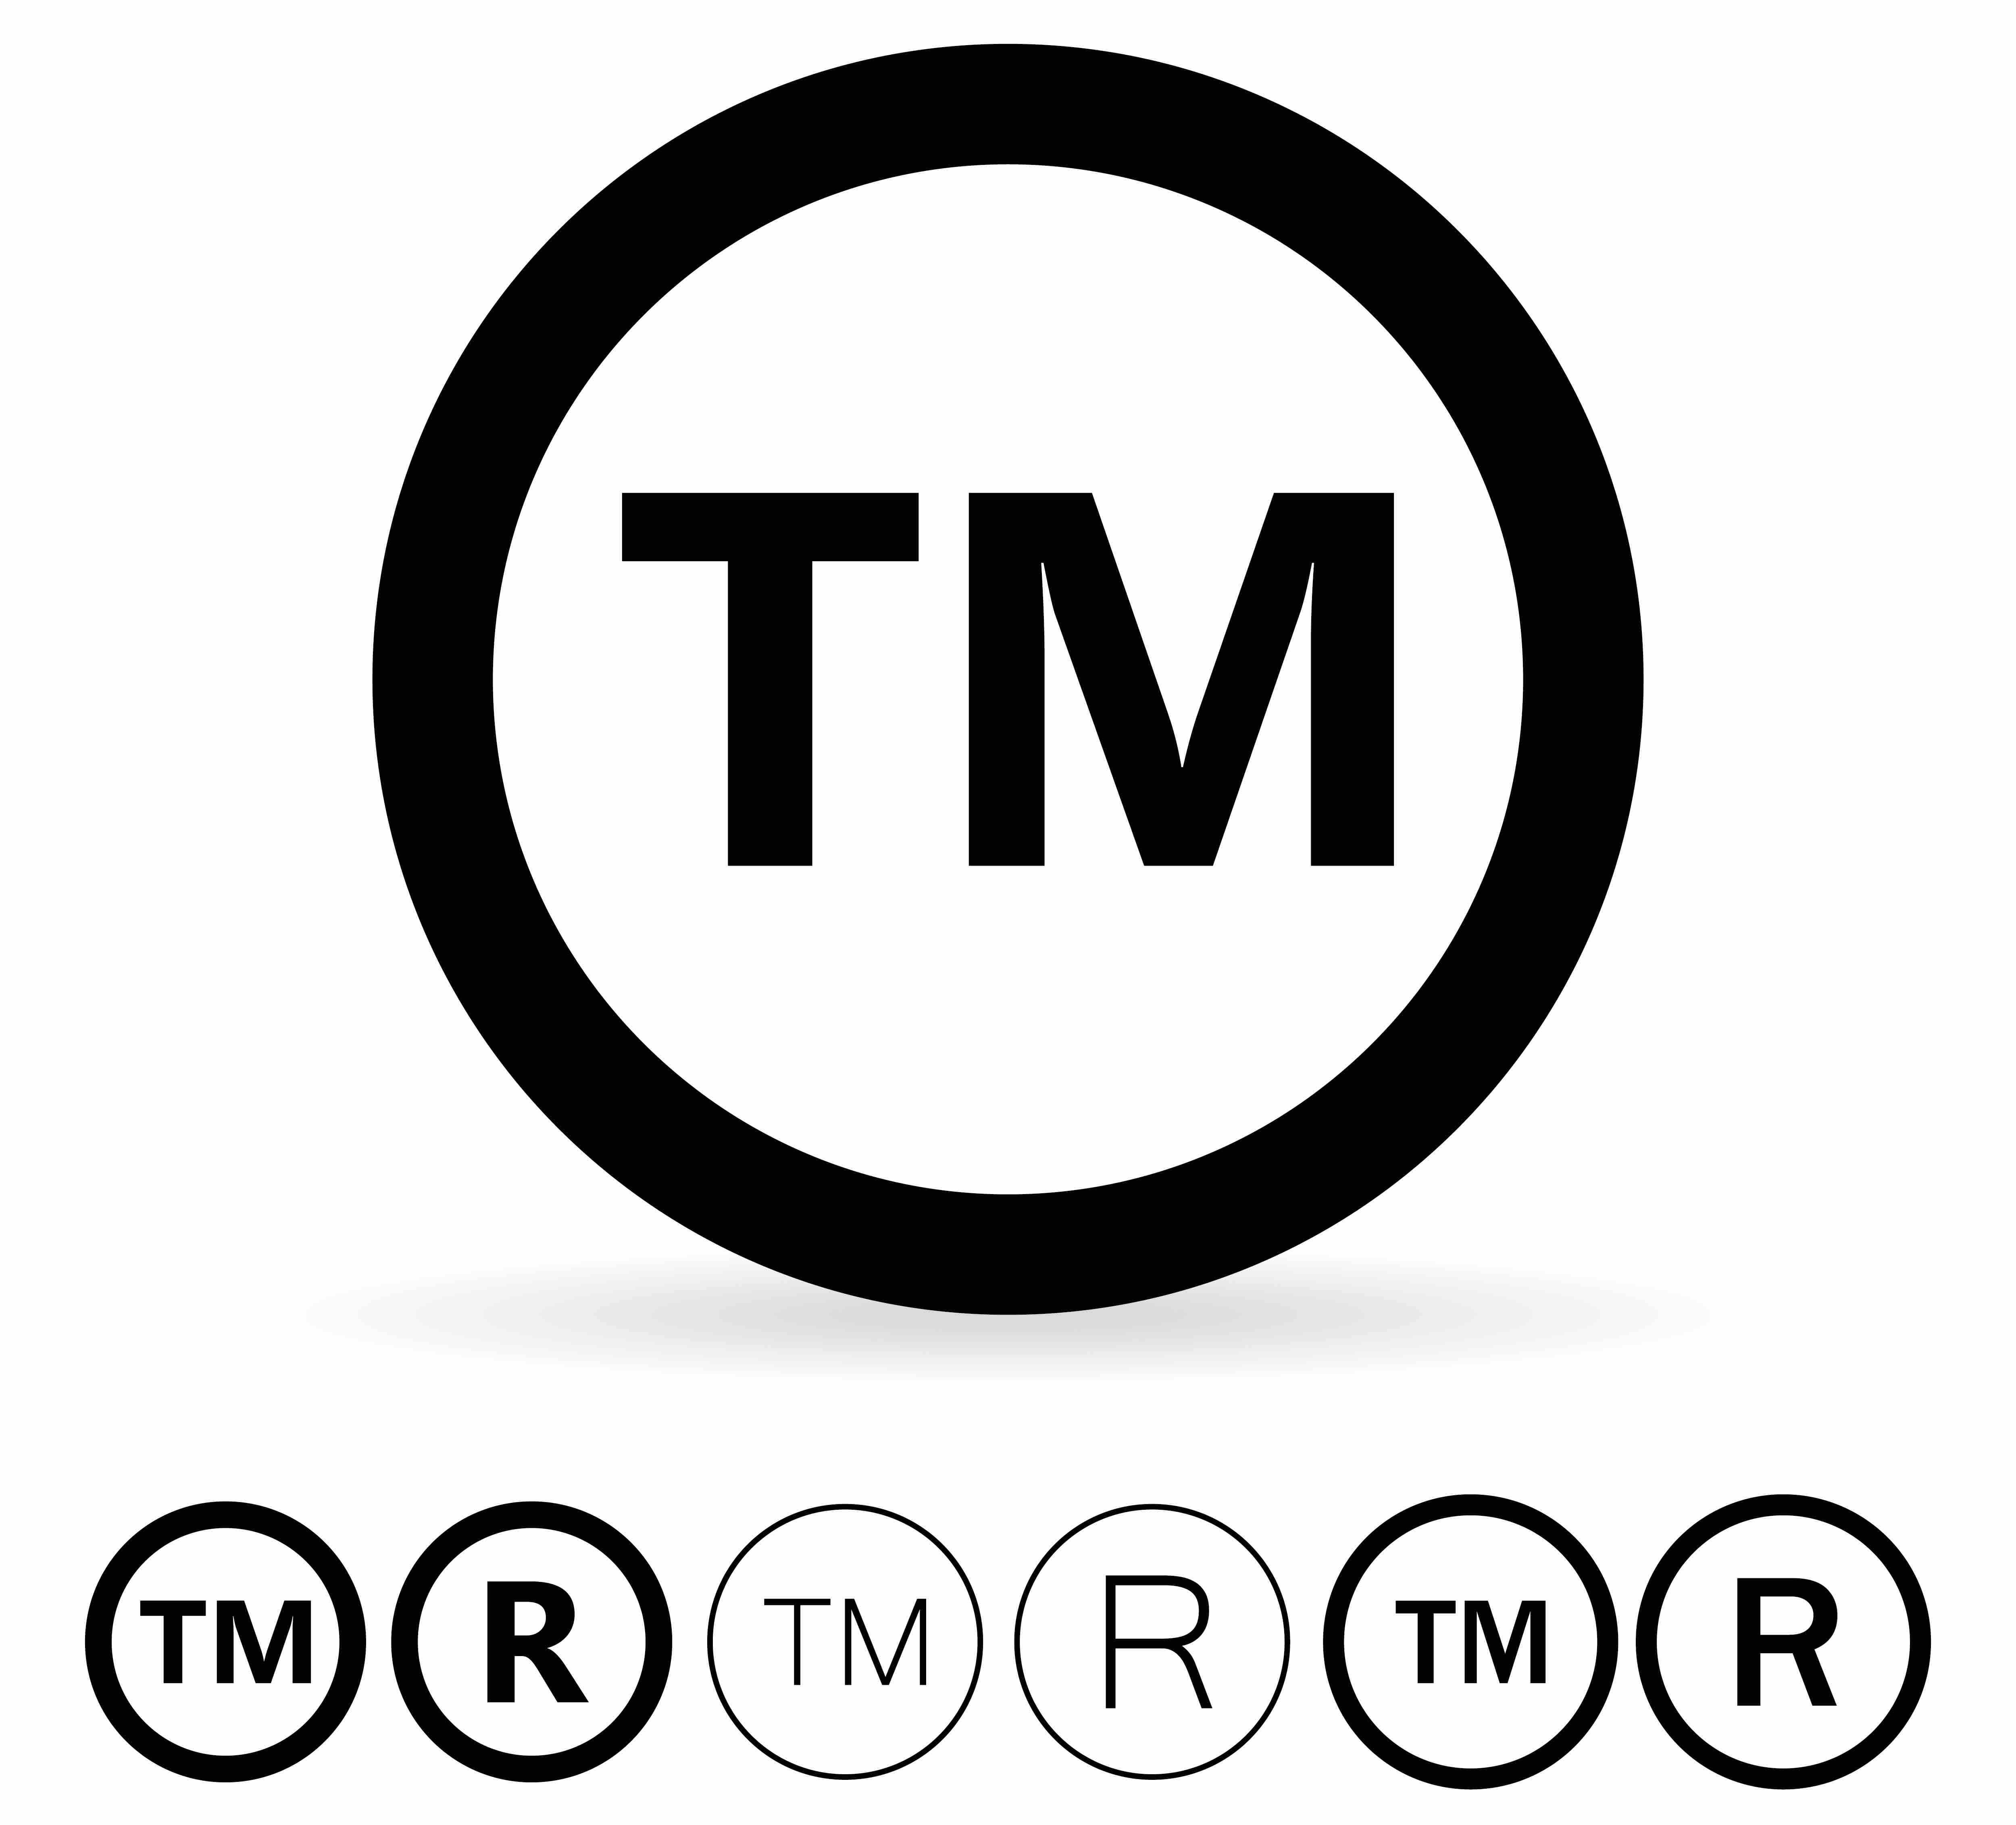 registered trademark symbols 